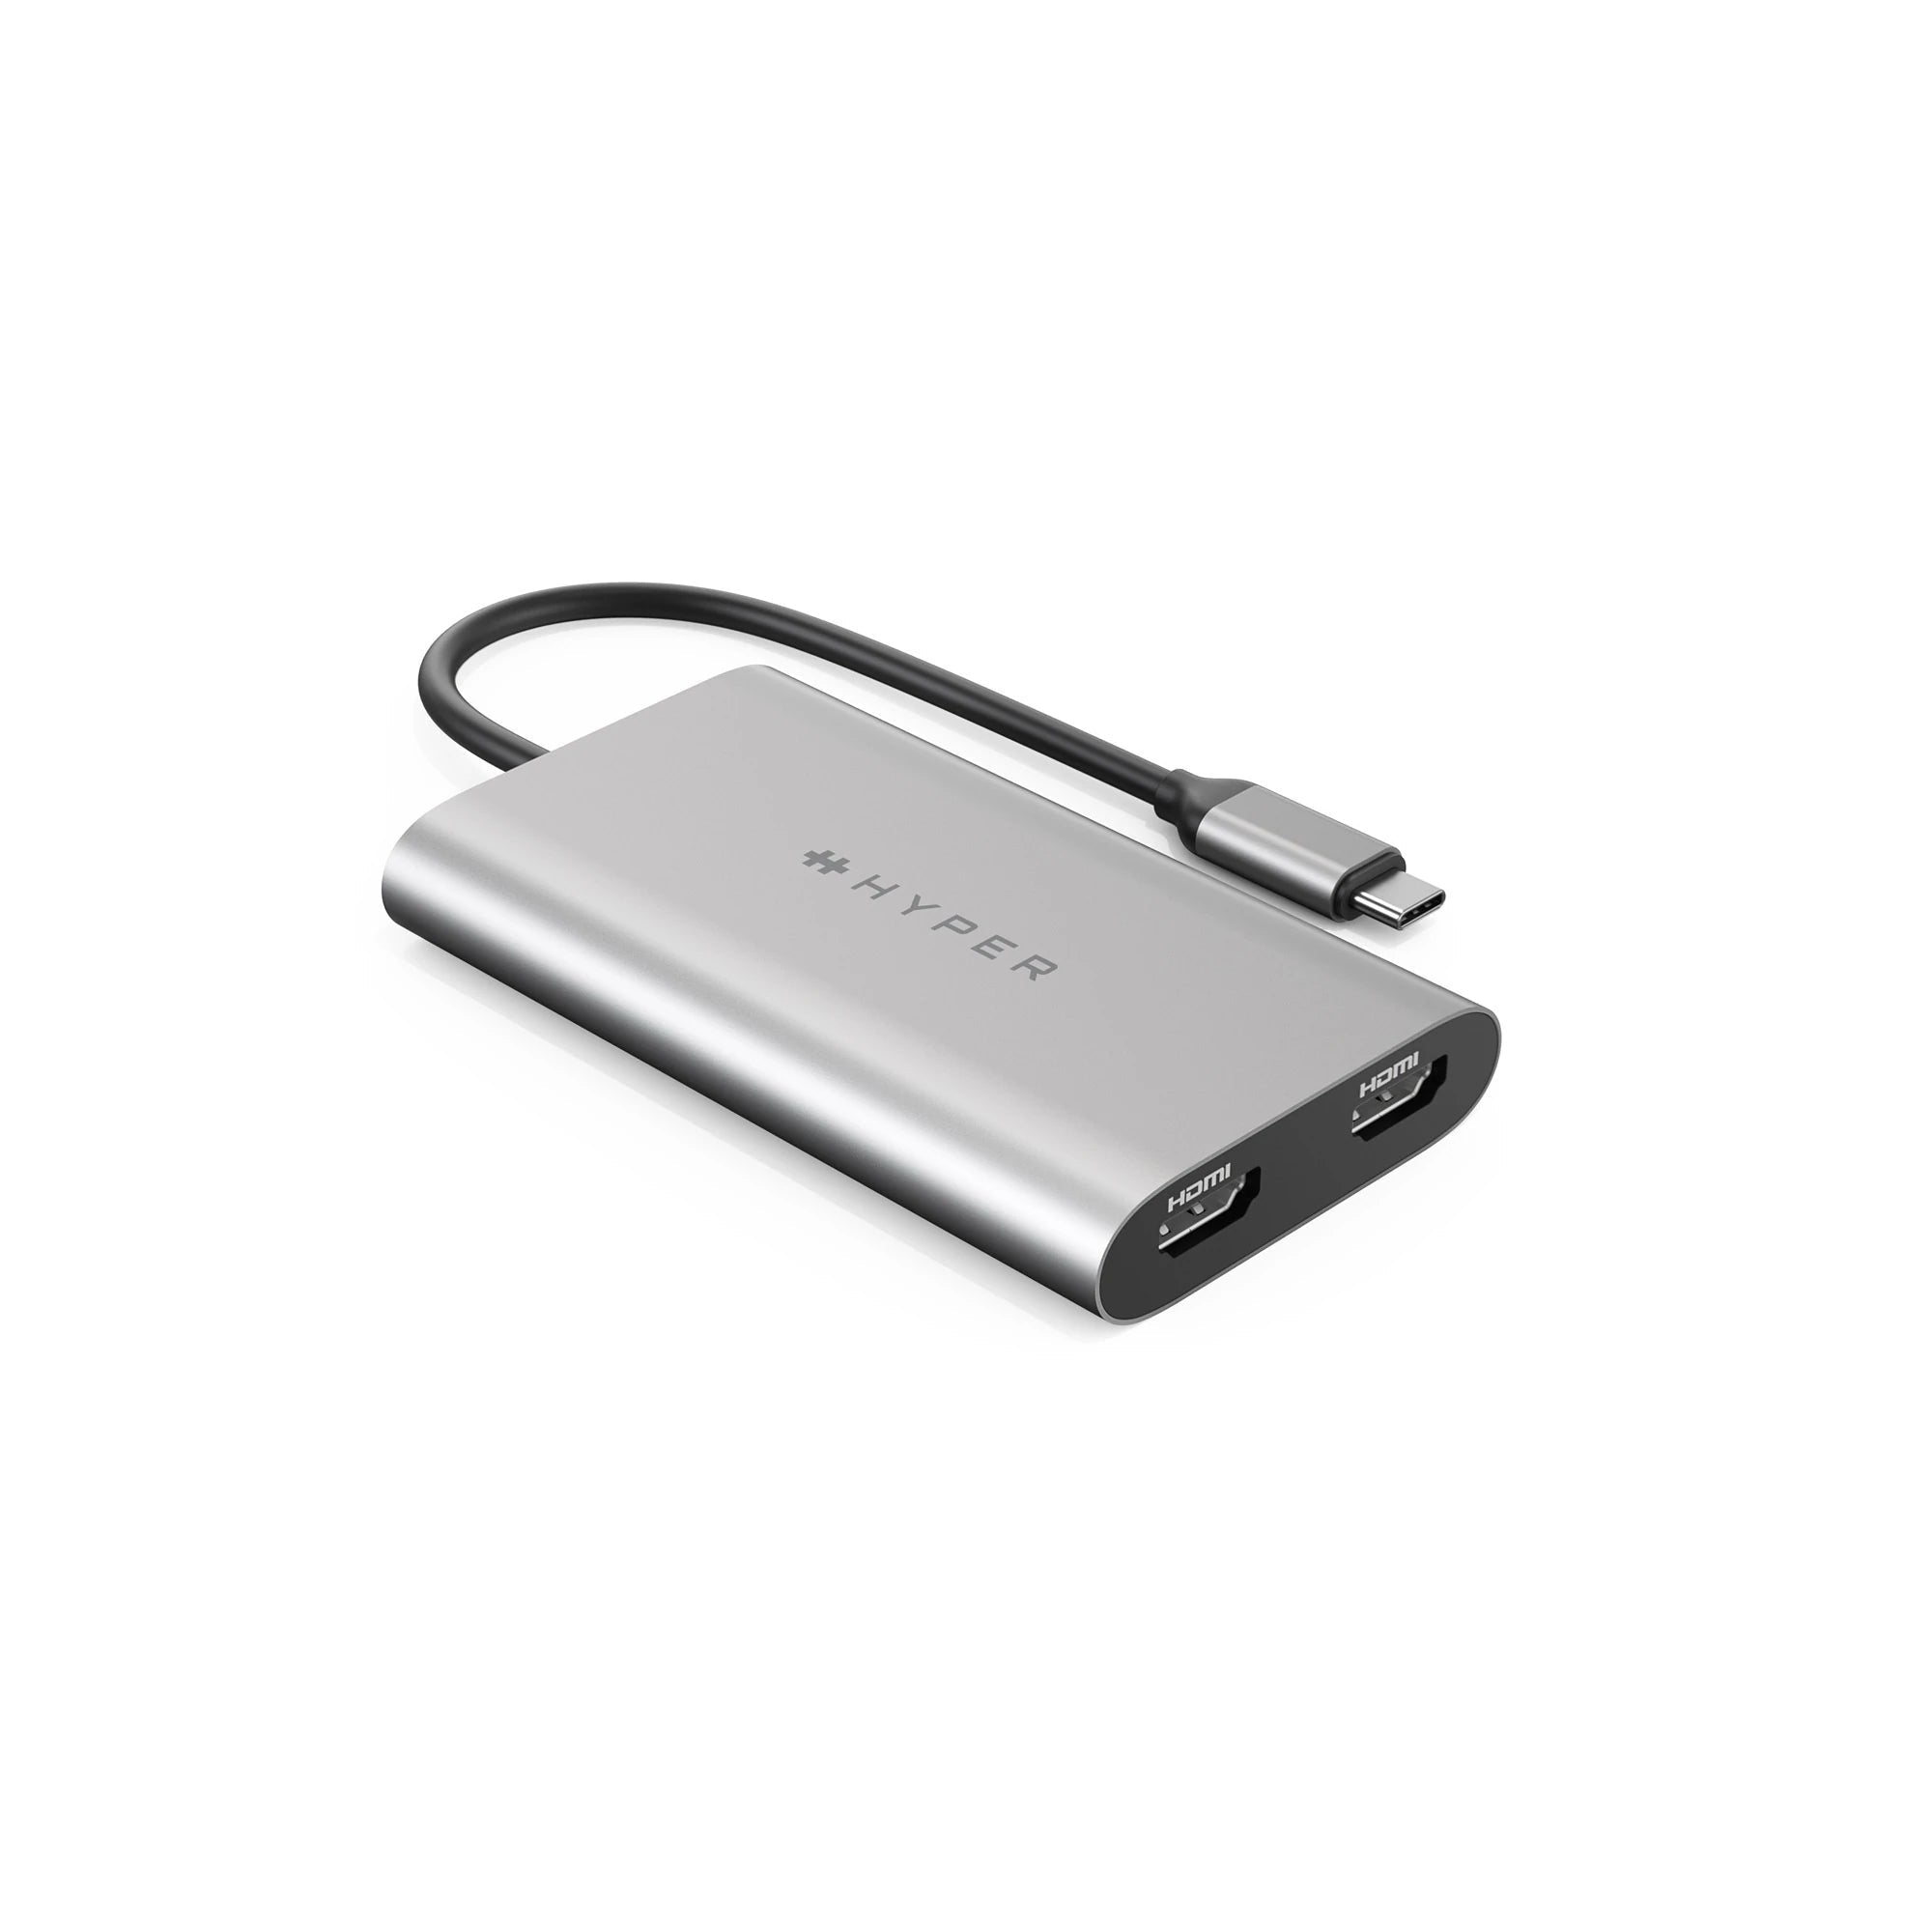 Falde tilbage Overdreven ensom Hyper® HyperDrive Dual 4K HDMI Adapter for M1/M2 MacBook – Targus Europe